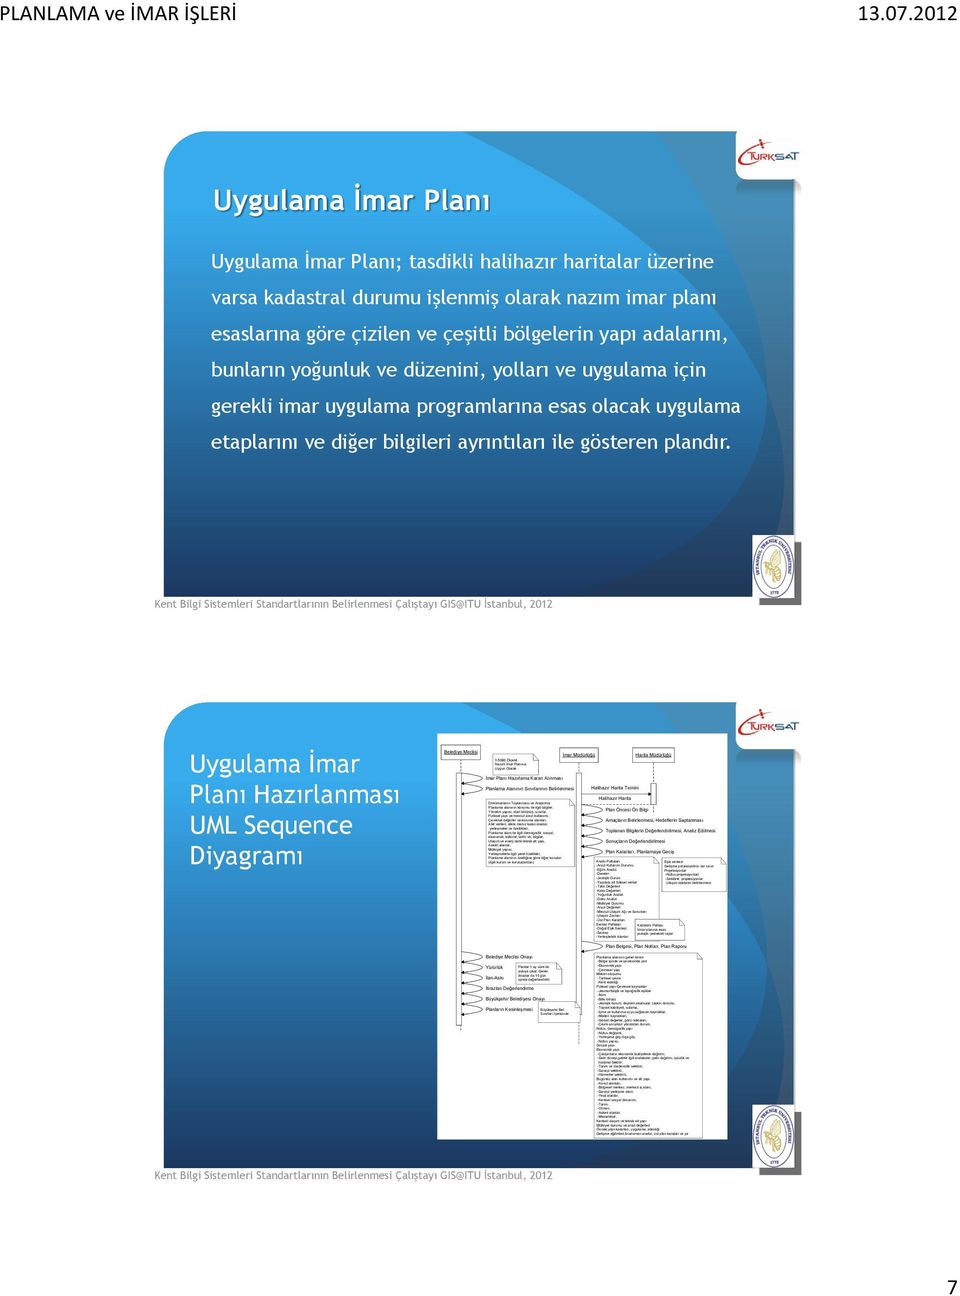 Uygulama İmar Planı Hazırlanması UML Sequence Diyagramı Belediye Meclisi İmar Müdürlüğü Harita Müdürlüğü 1/5000 Ölçekli Nazım İmar Planına Uygun Olarak İmar Planı Hazırlama Kararı Alınması Planlama